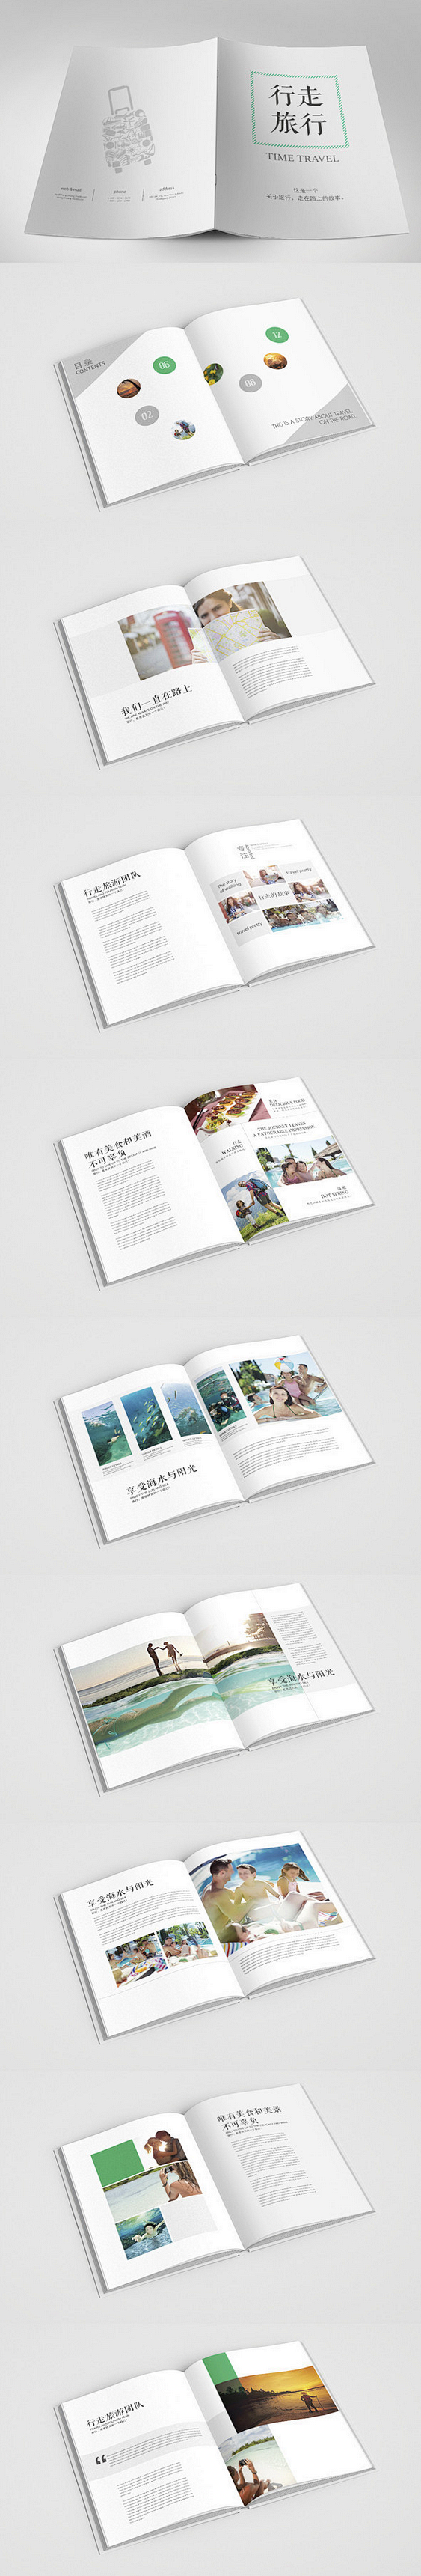 时尚旅行画册设计 国外画册 画册版式设计...